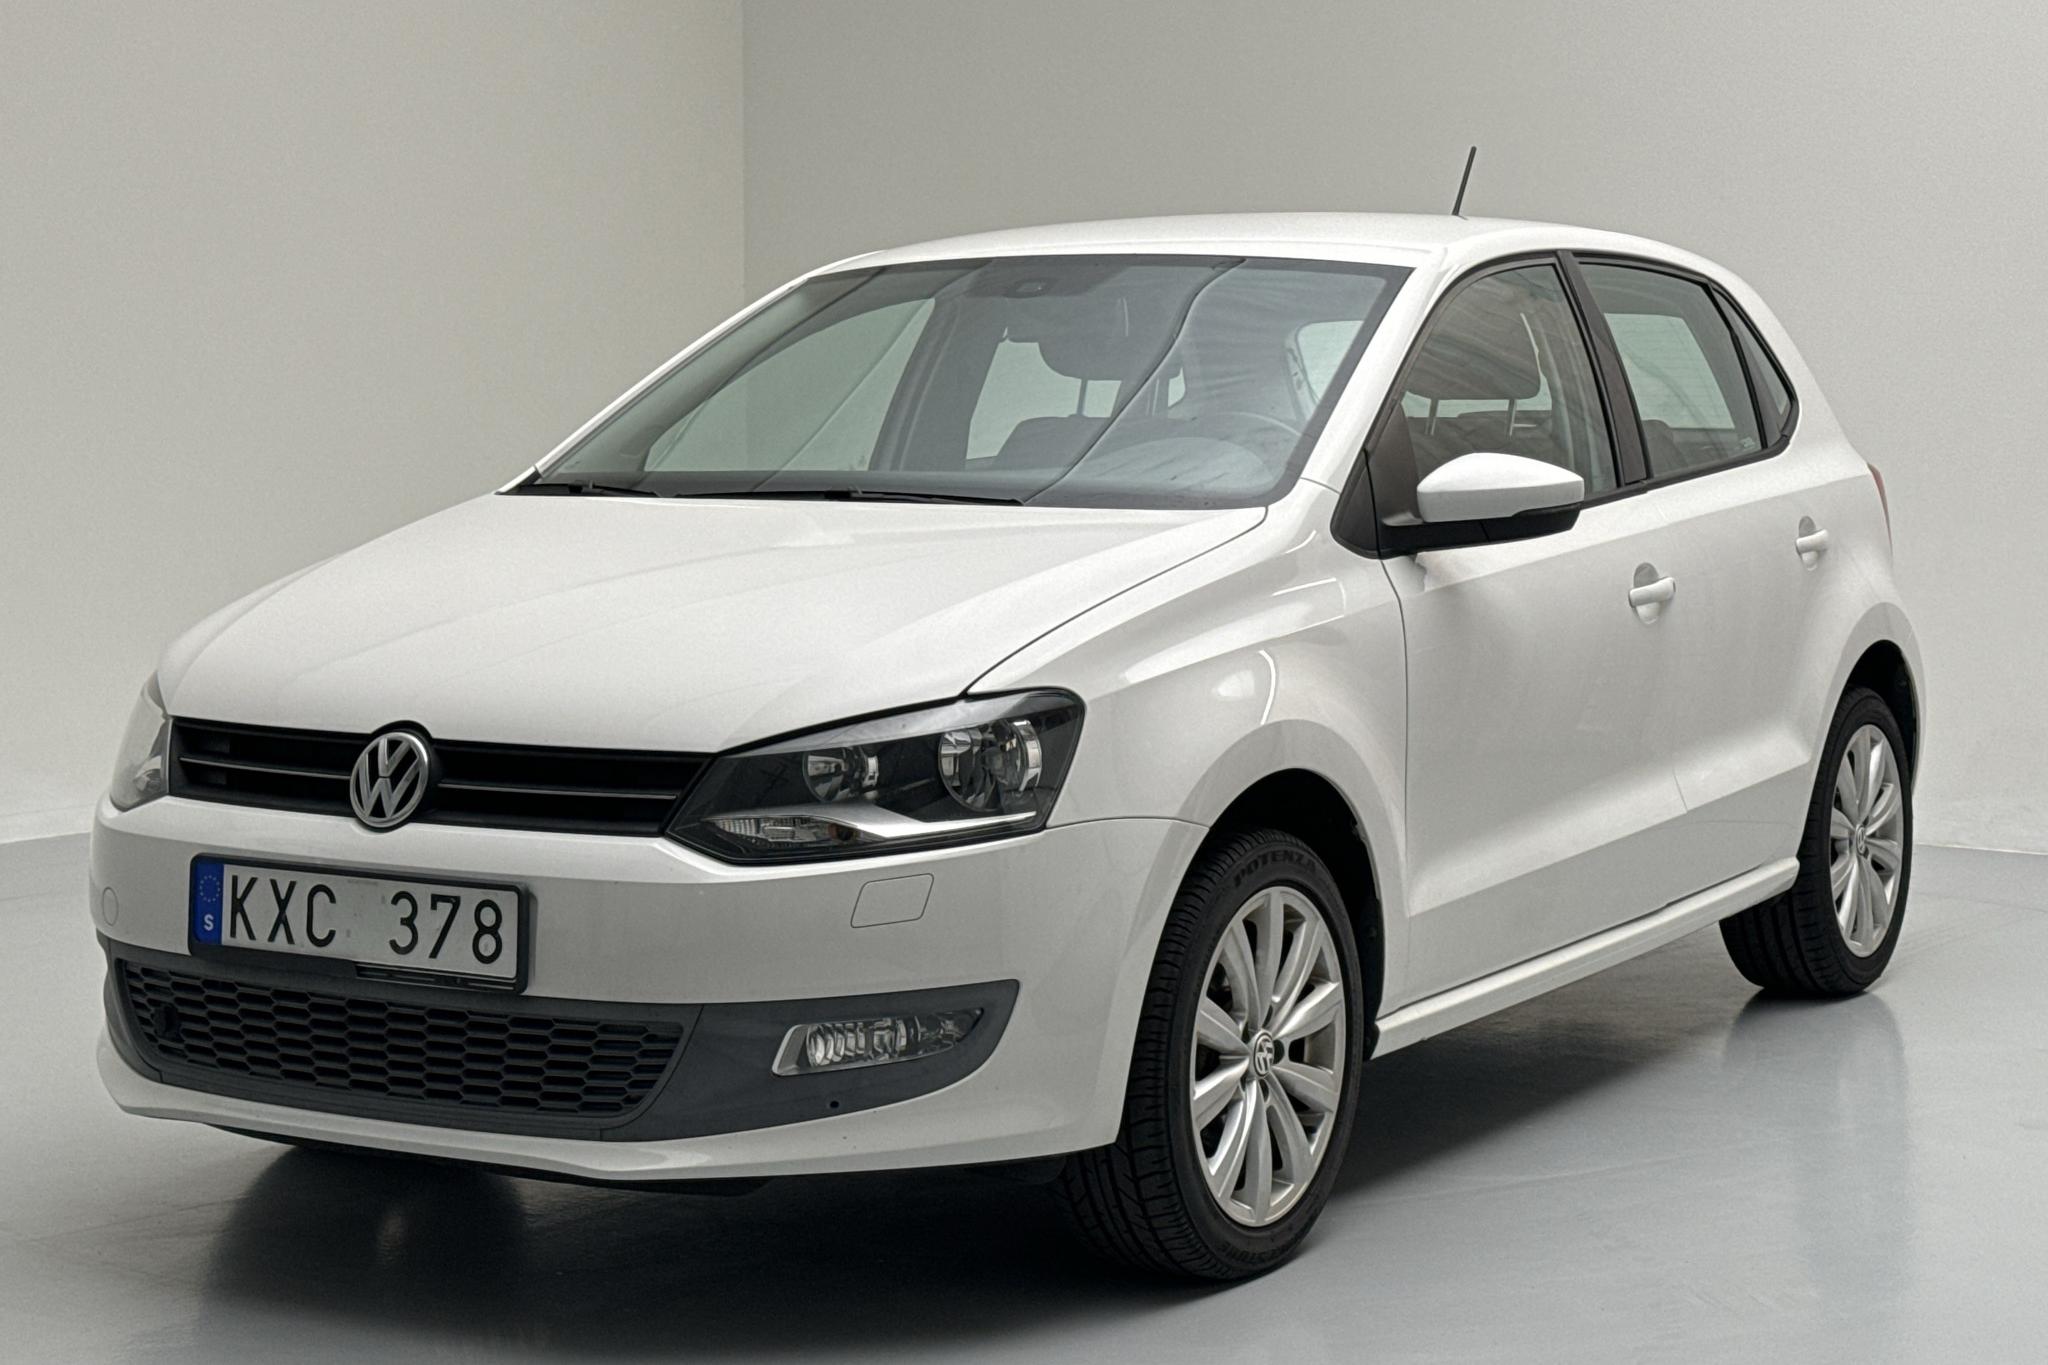 VW Polo 1.4 5dr (85hk) - 173 780 km - Manual - white - 2011